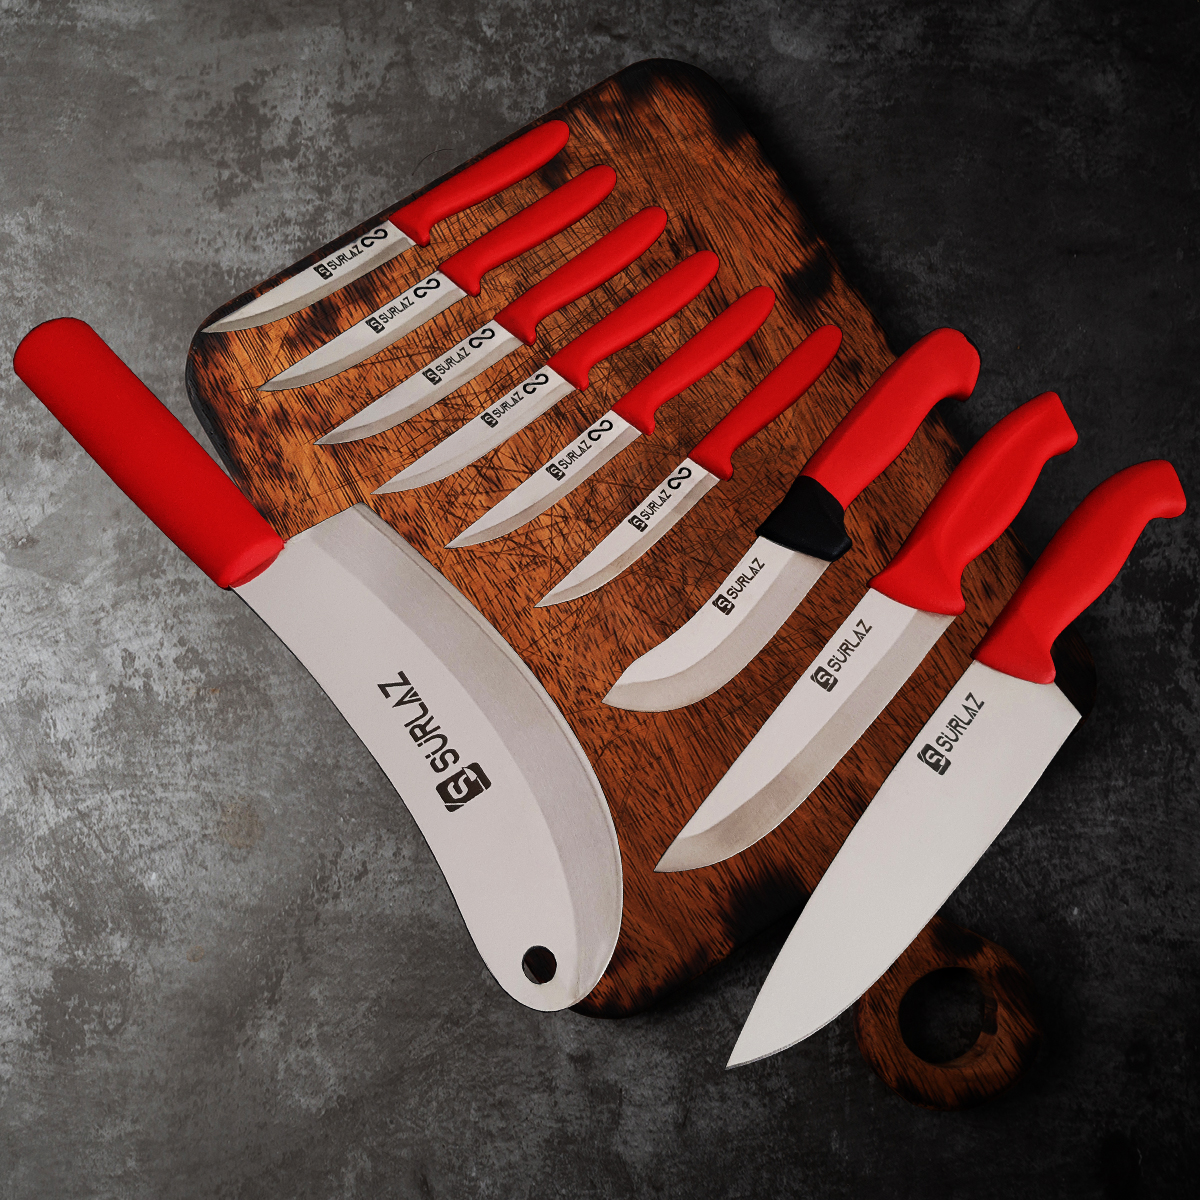 Sürlaz Çeyizlik Bıçak Seti 10 Parça Red Serisi Mutfak Bıçak Seti